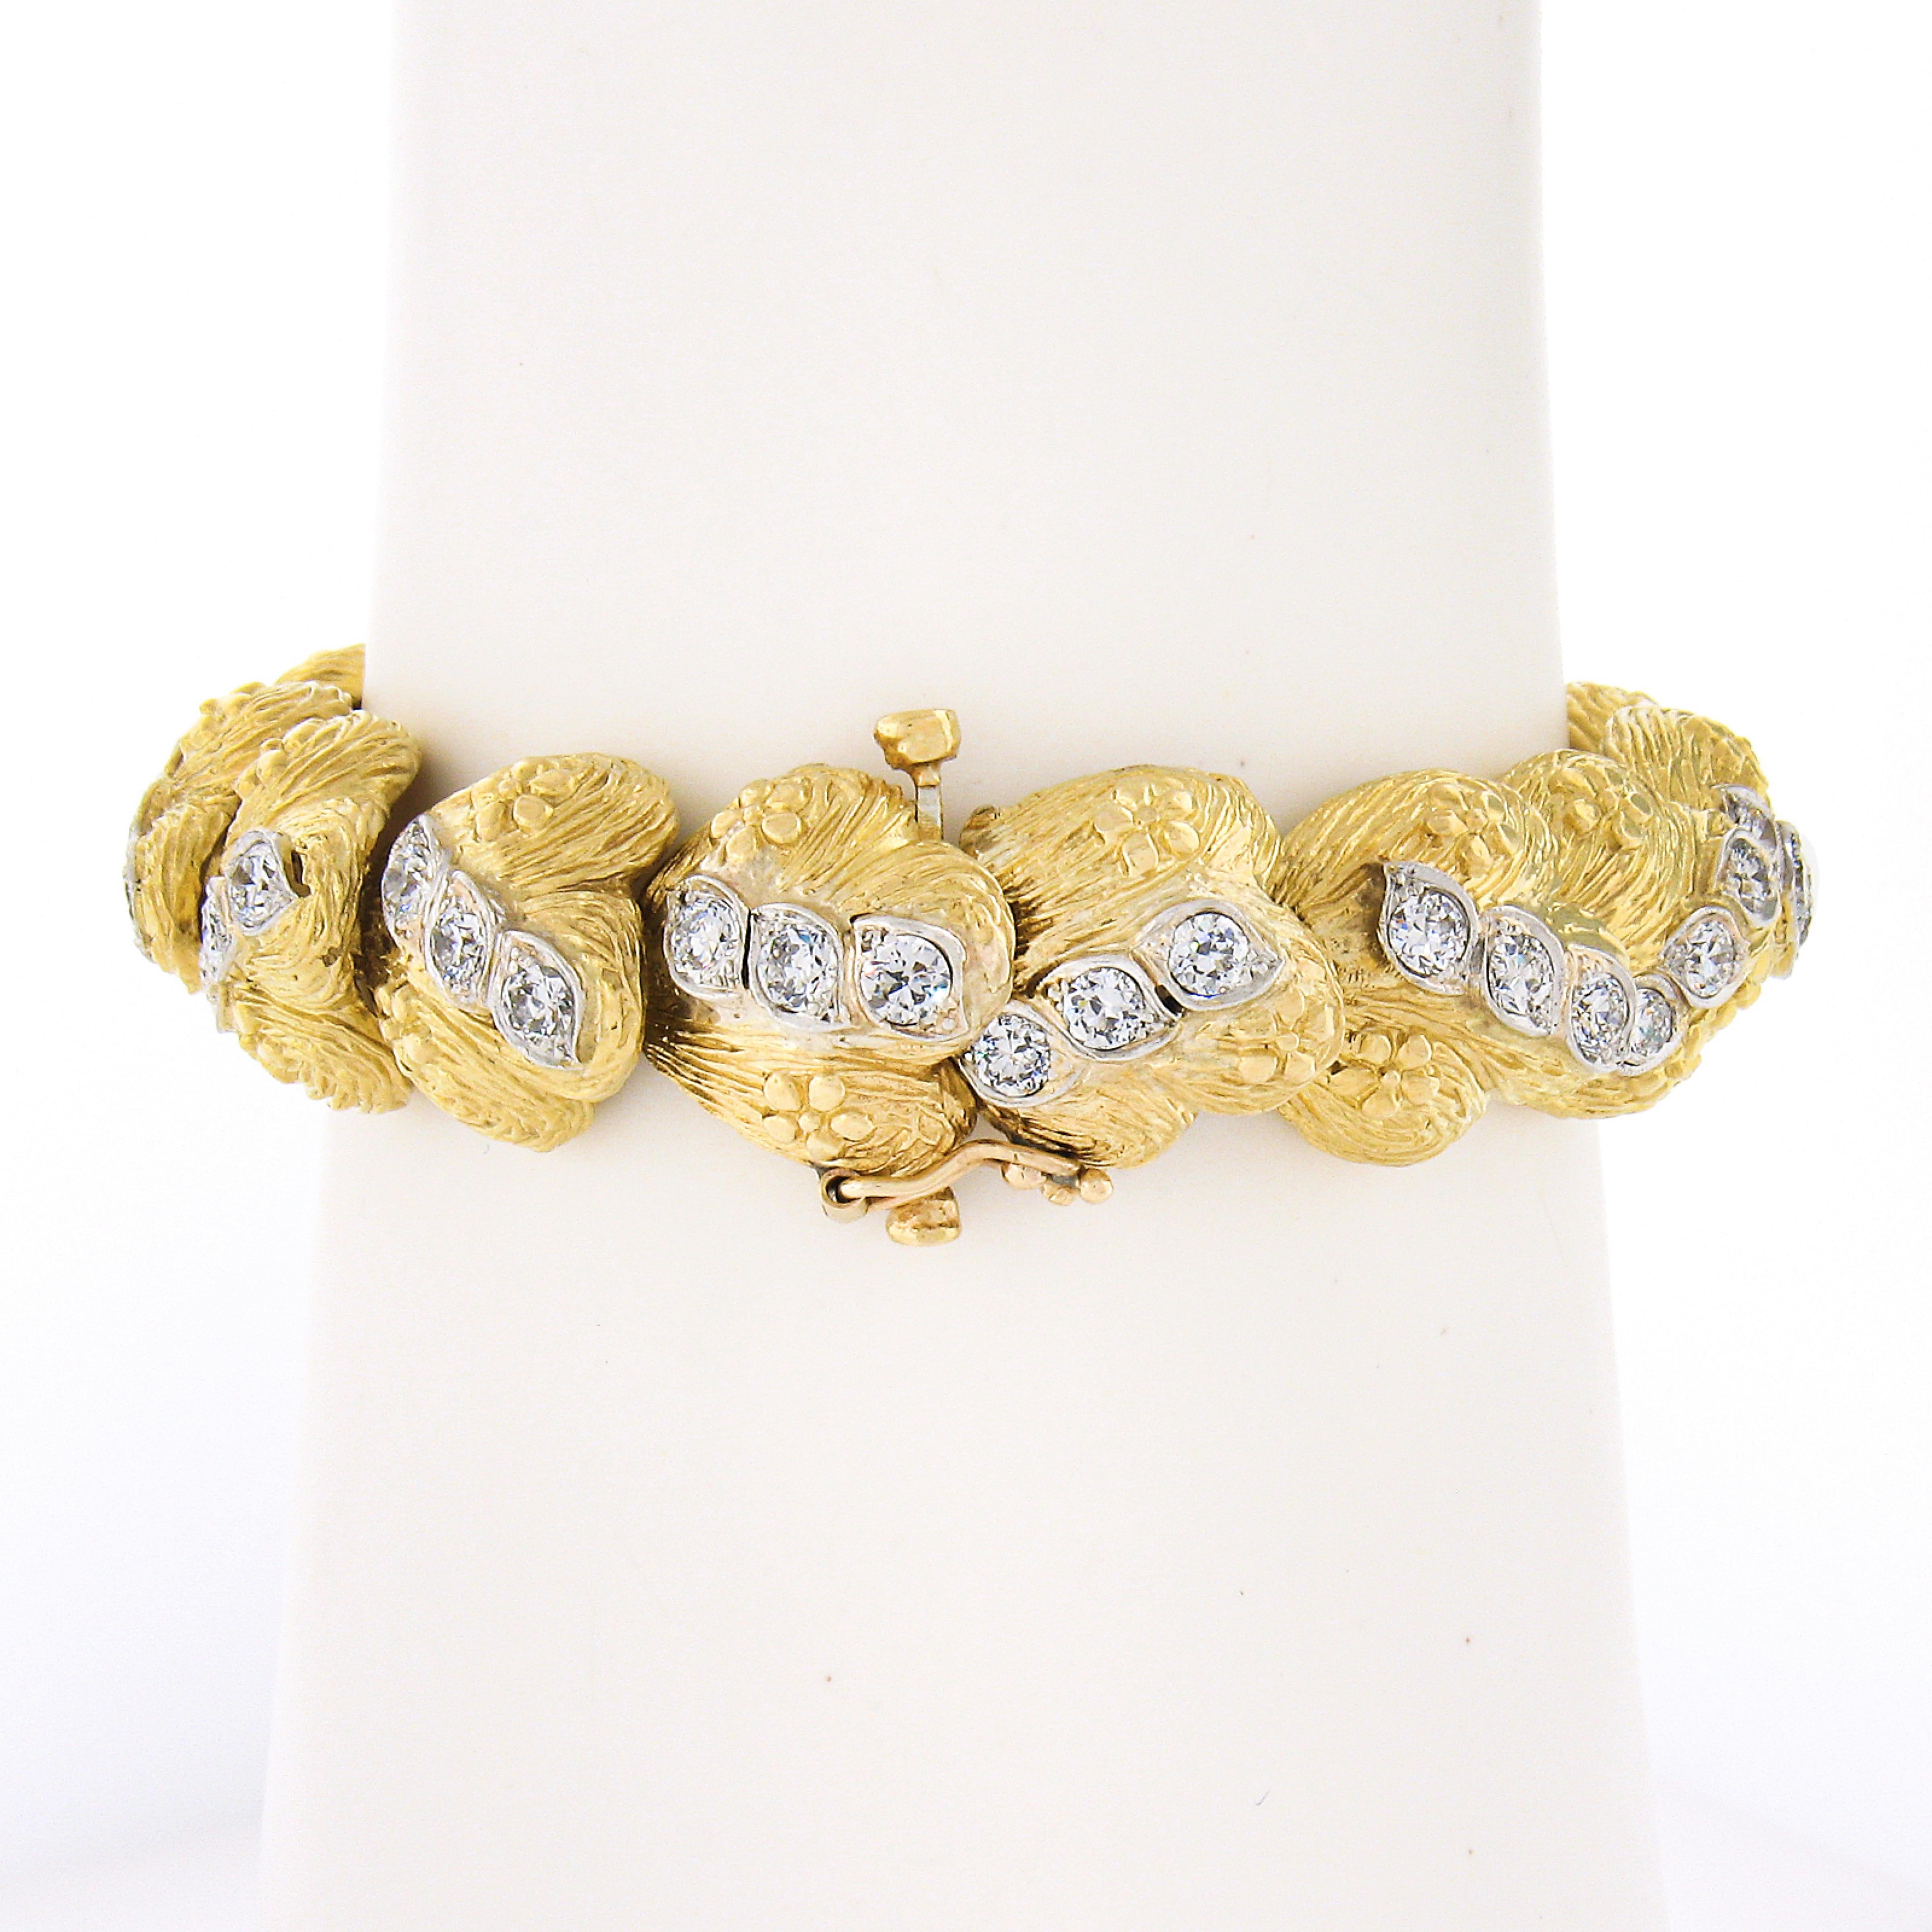 Dieses atemberaubende und solide gefertigte Vintage-Armband ist aus massivem 18-karätigem Gelbgold gefertigt und verfügt über einzigartig gestaltete Glieder, die mit ca. 5 Karat hochwertigen Diamanten im alten europäischen und Übergangsschliff